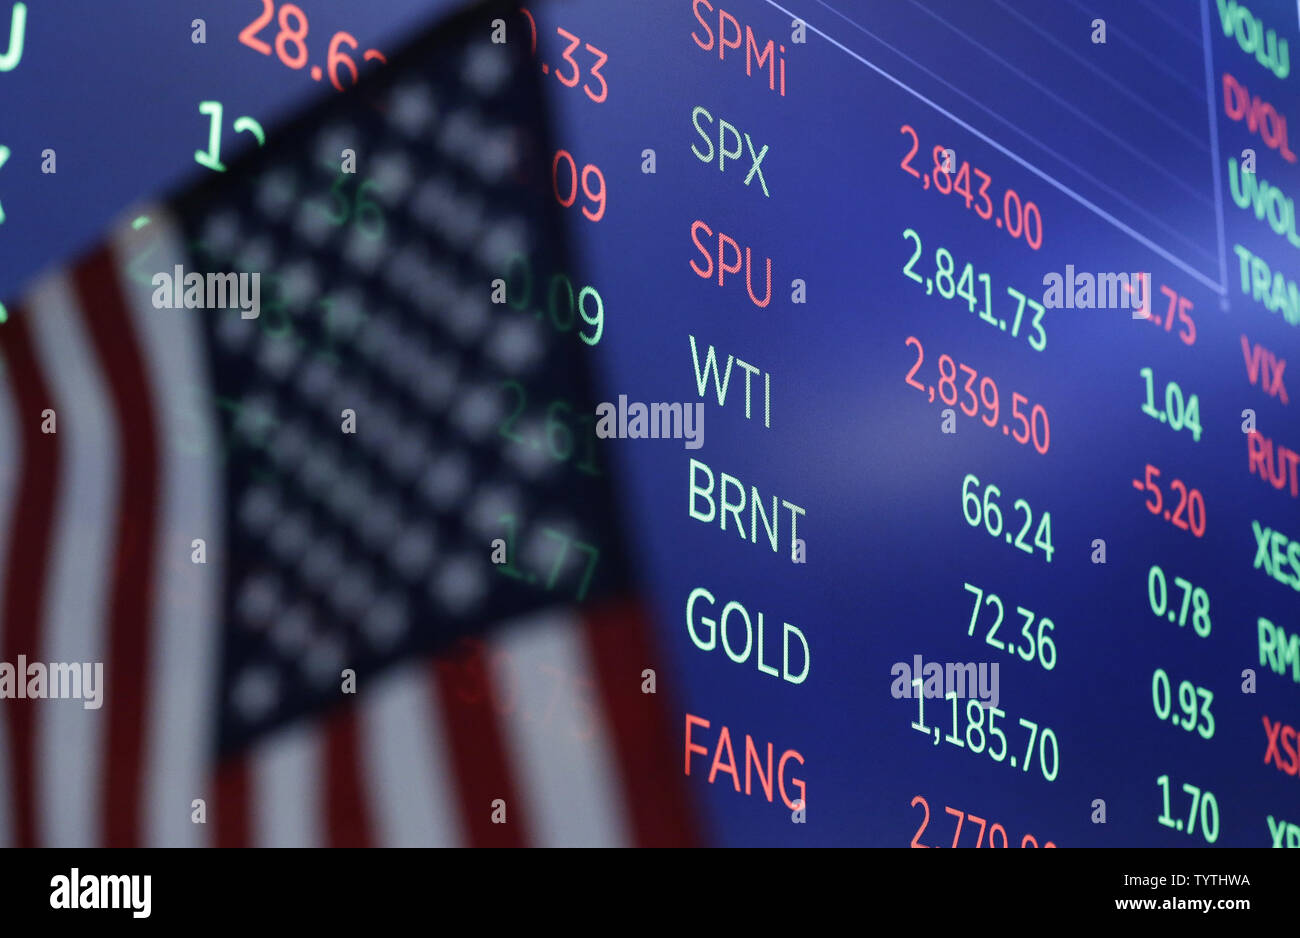 Los símbolos y los precios de petróleo crudo Brent y WTI Crudo están en  cartelera en el piso del NYSE en la campana de apertura en la Bolsa de  Valores de Nueva